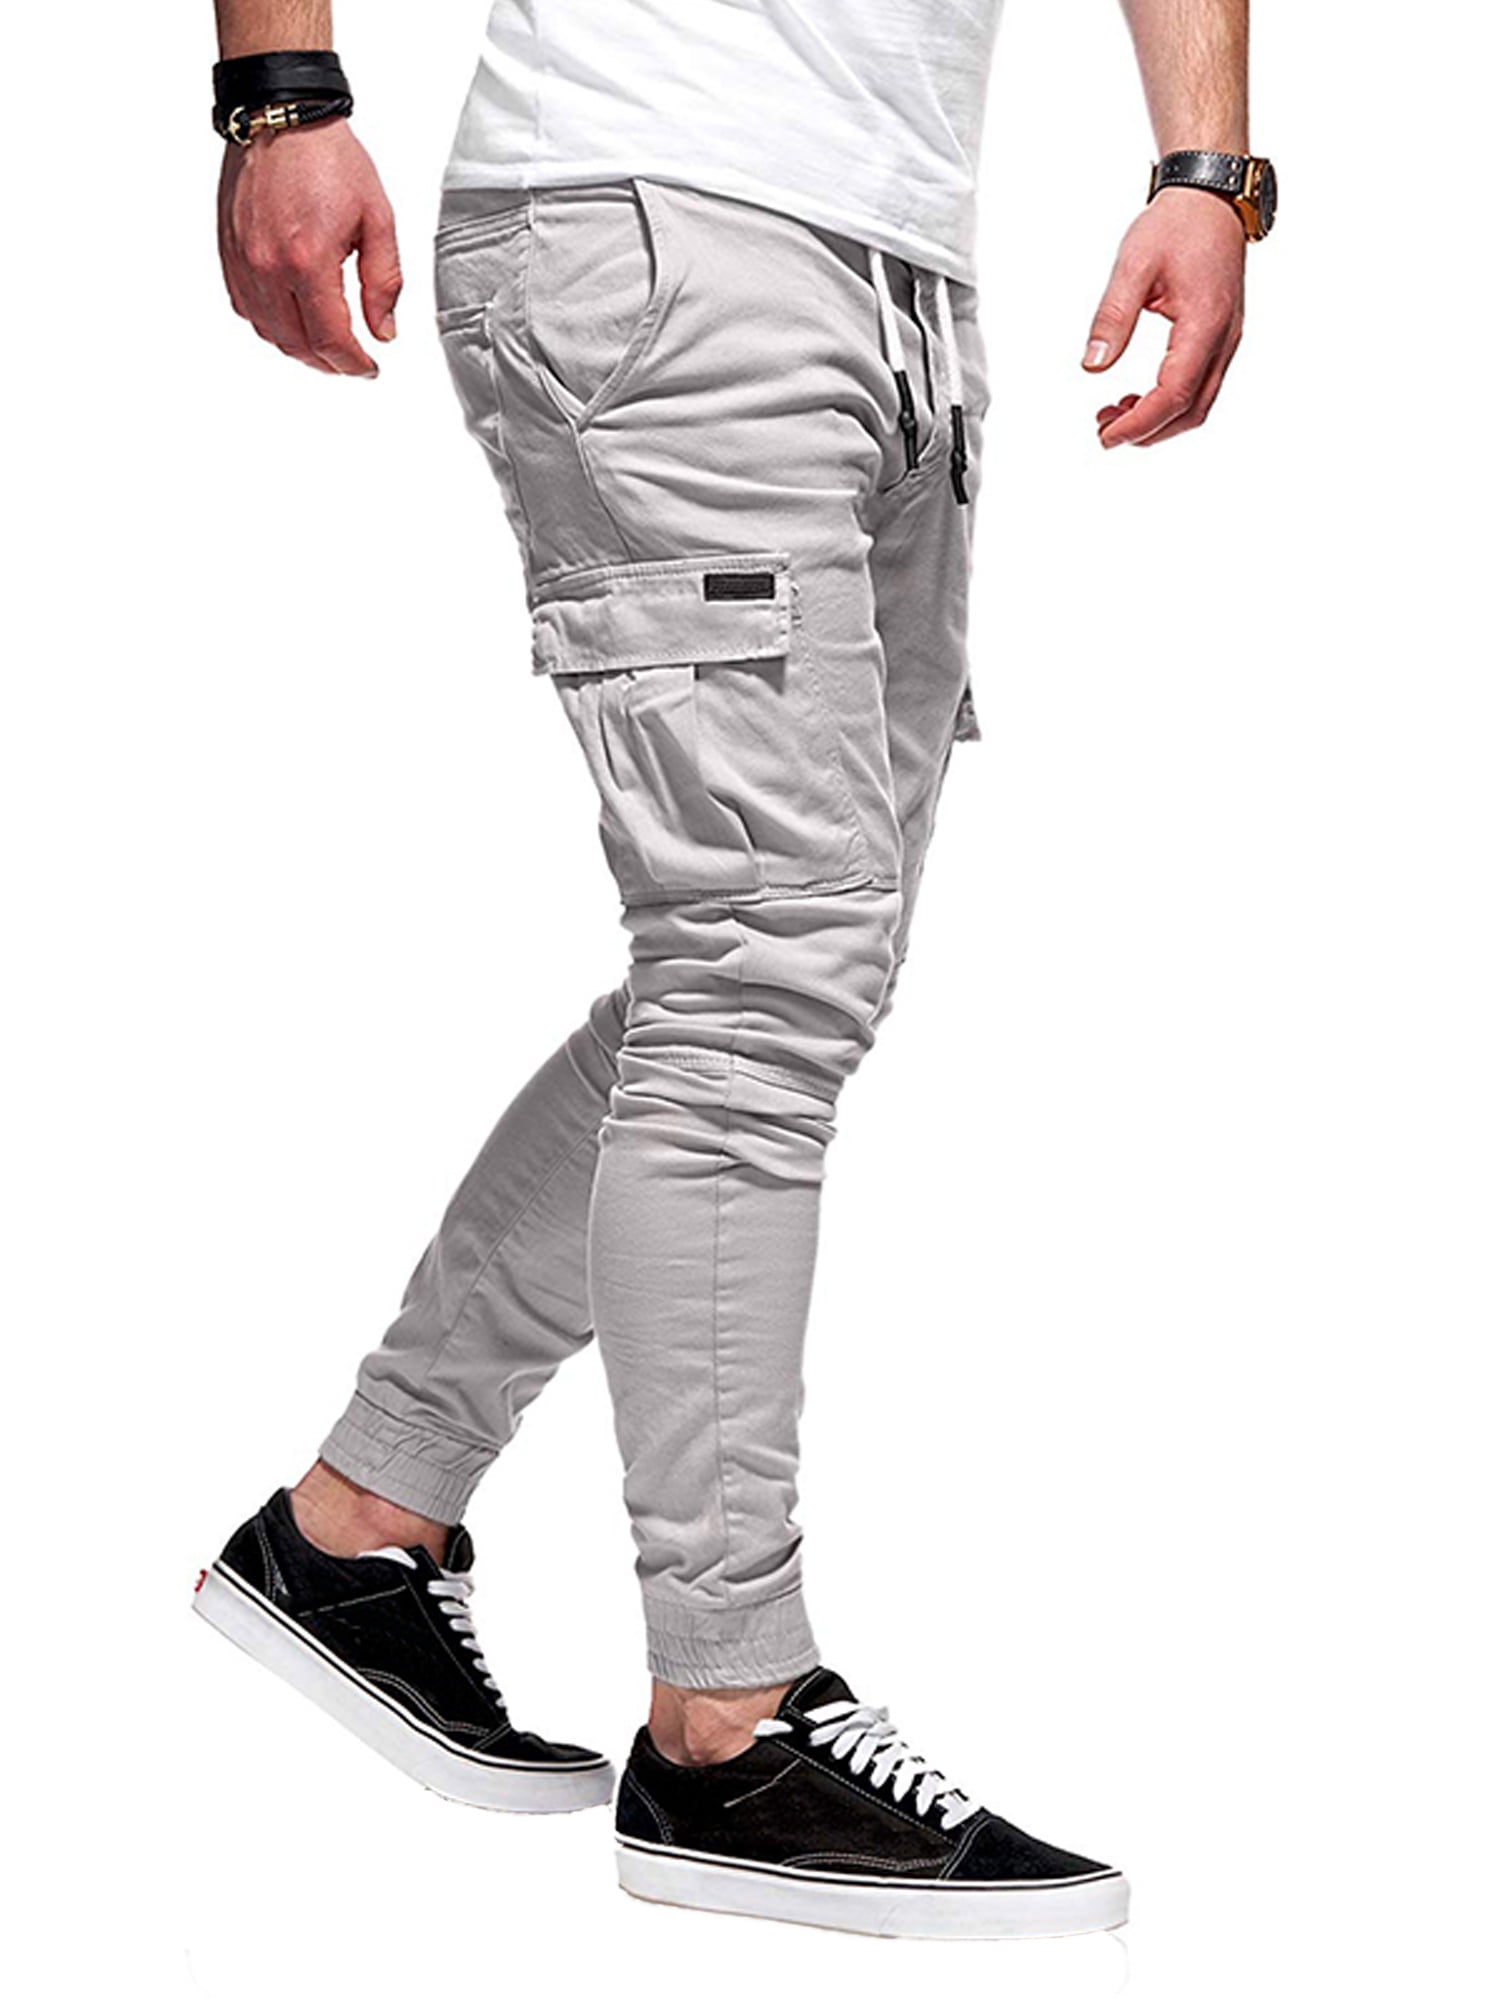 Men's Cropped Pants & Jeans | Men's Ankle & Capri Pants | ASOS-hanic.com.vn